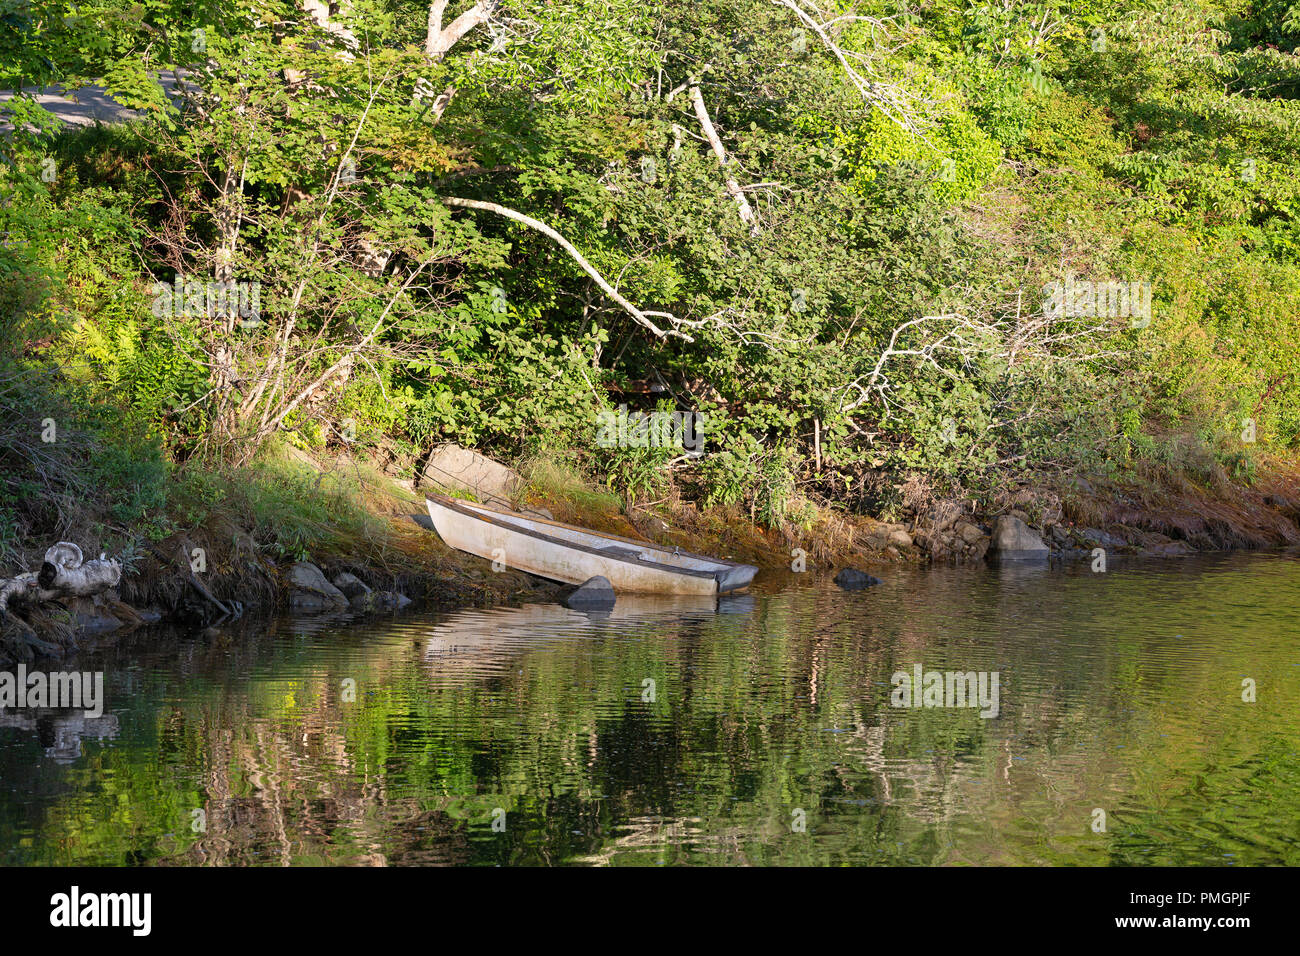 Blick auf eine kleine alte weiß lackiert Skiff oben auf Ufer mit den Überlegungen der Grünen auf der Wasseroberfläche reflektiert gebunden. Stockfoto